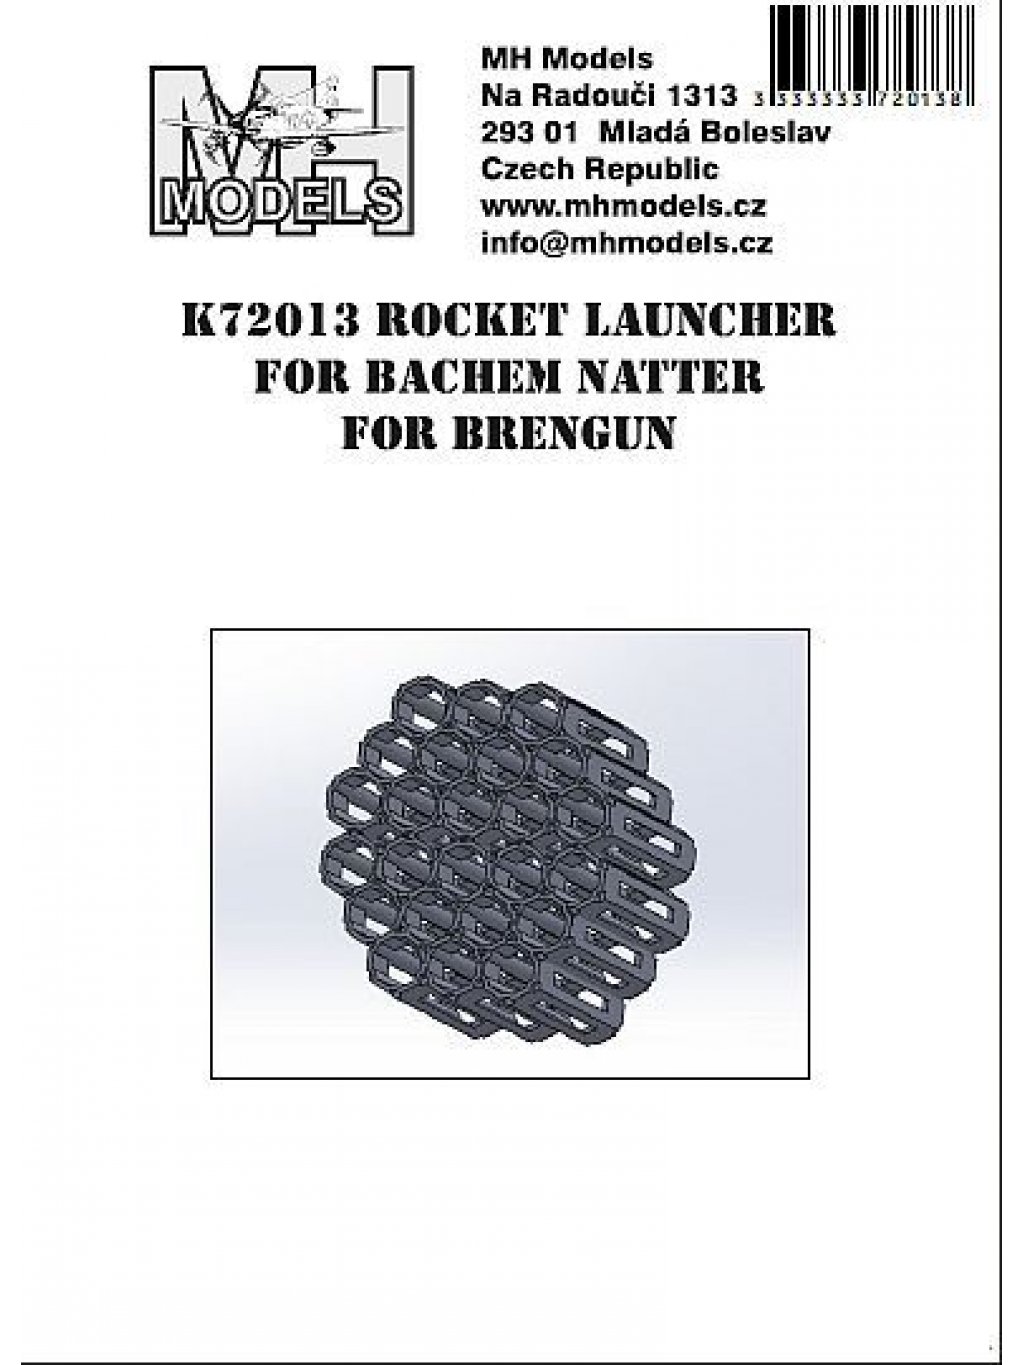 Rocket laucher for Bachem Natter for Brengun